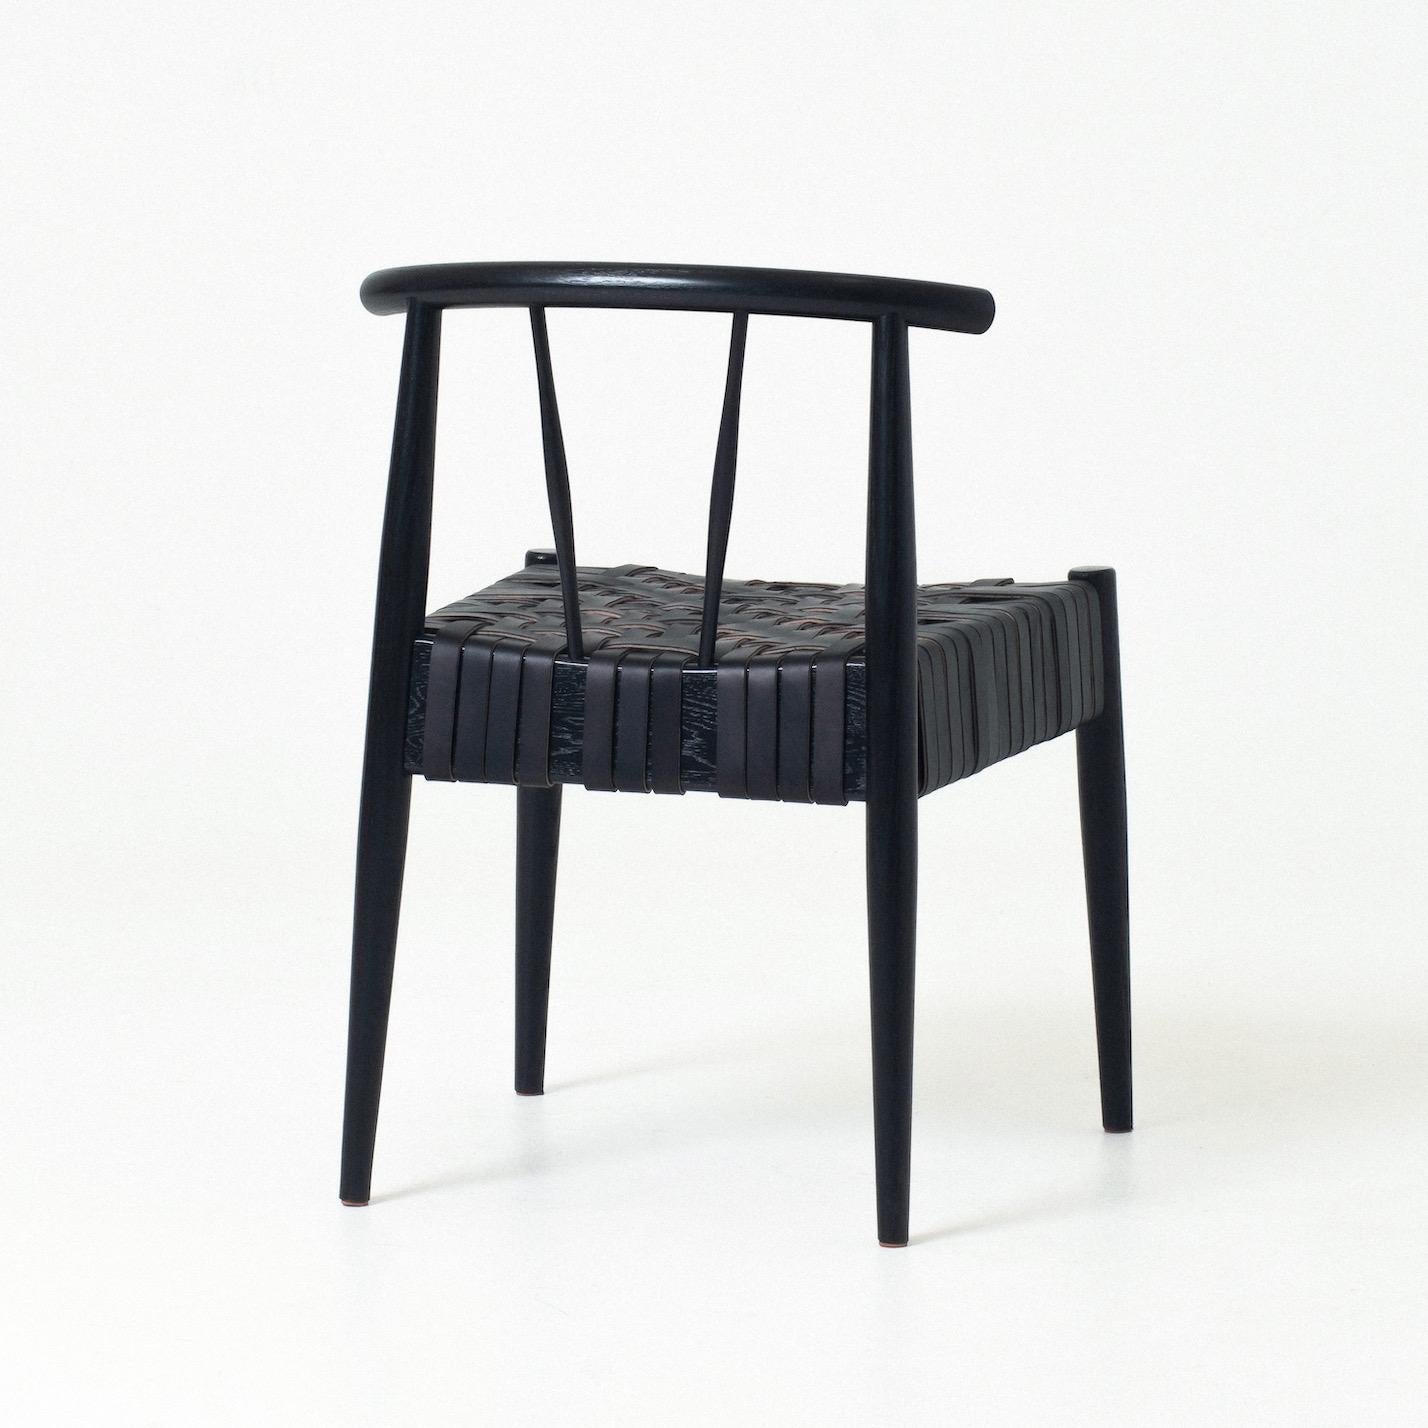 La chaise Neil est une chaise d'appoint moderne dont l'assise est tissée en cuir de bride selon un motif de tissage radial parfois utilisé pour les sièges et les paniers des chaises Shakers traditionnelles. Les pieds tournés de Neil s'évasent dans